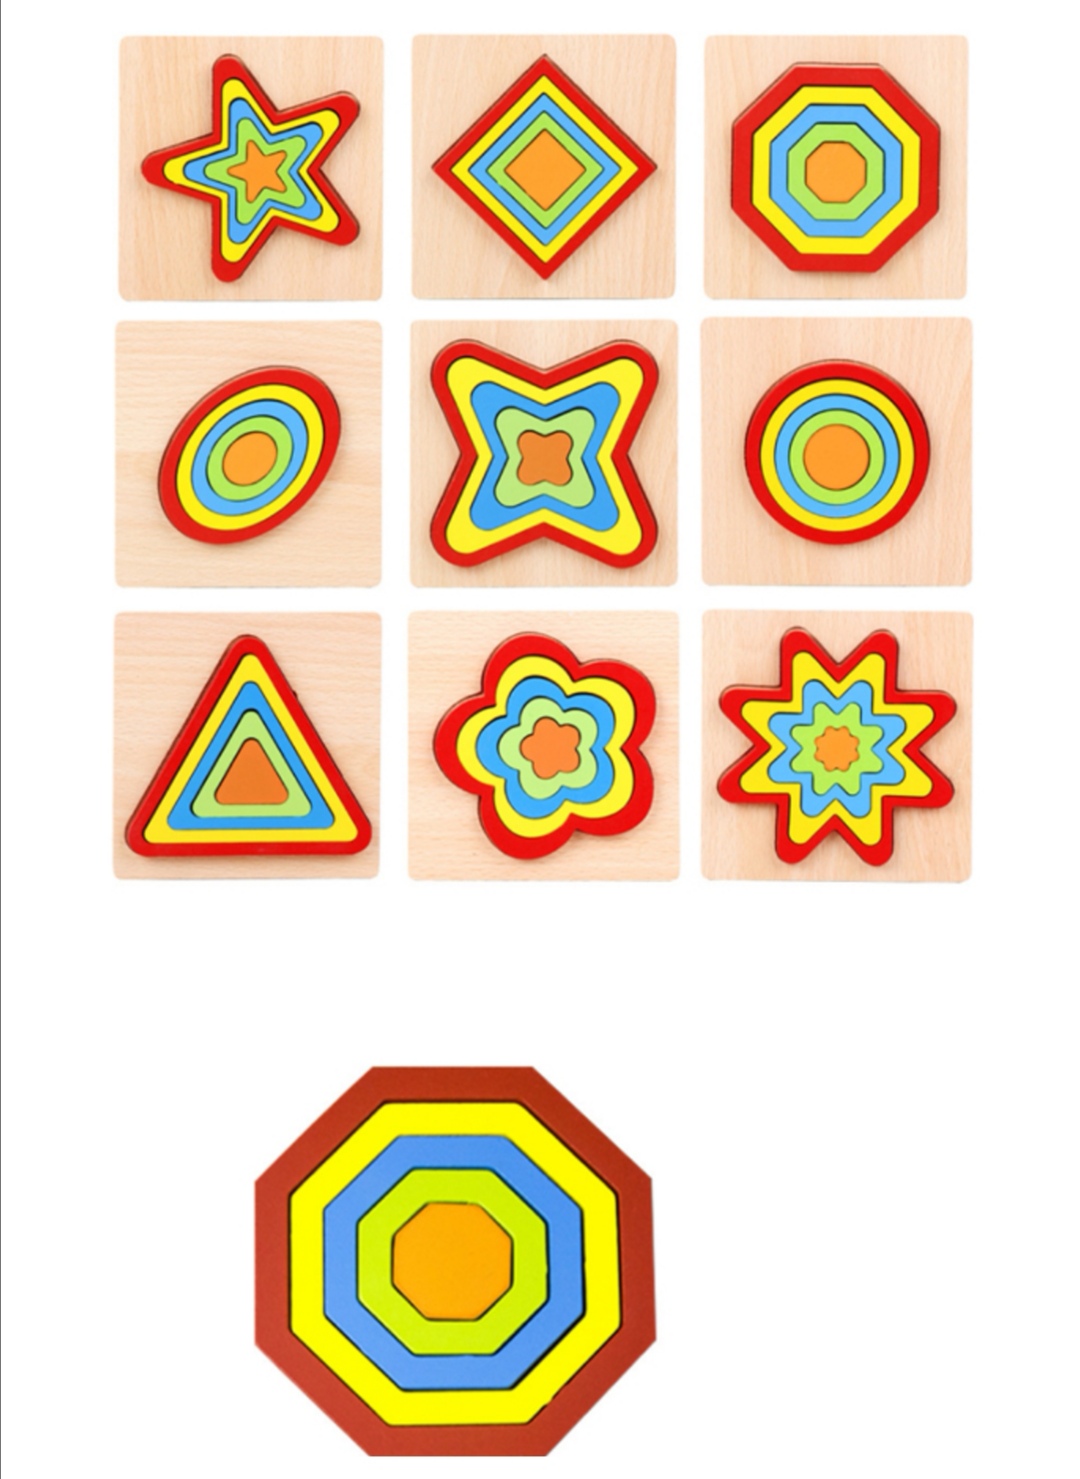 Aceste puzzle-uri pot fi folosite in diferite scopuri, de la invatarea formelor si a culorilor, pana la dezvoltarea abilitatilor motrice fine, a coordonarii mana-ochi si a creativitatii.

 